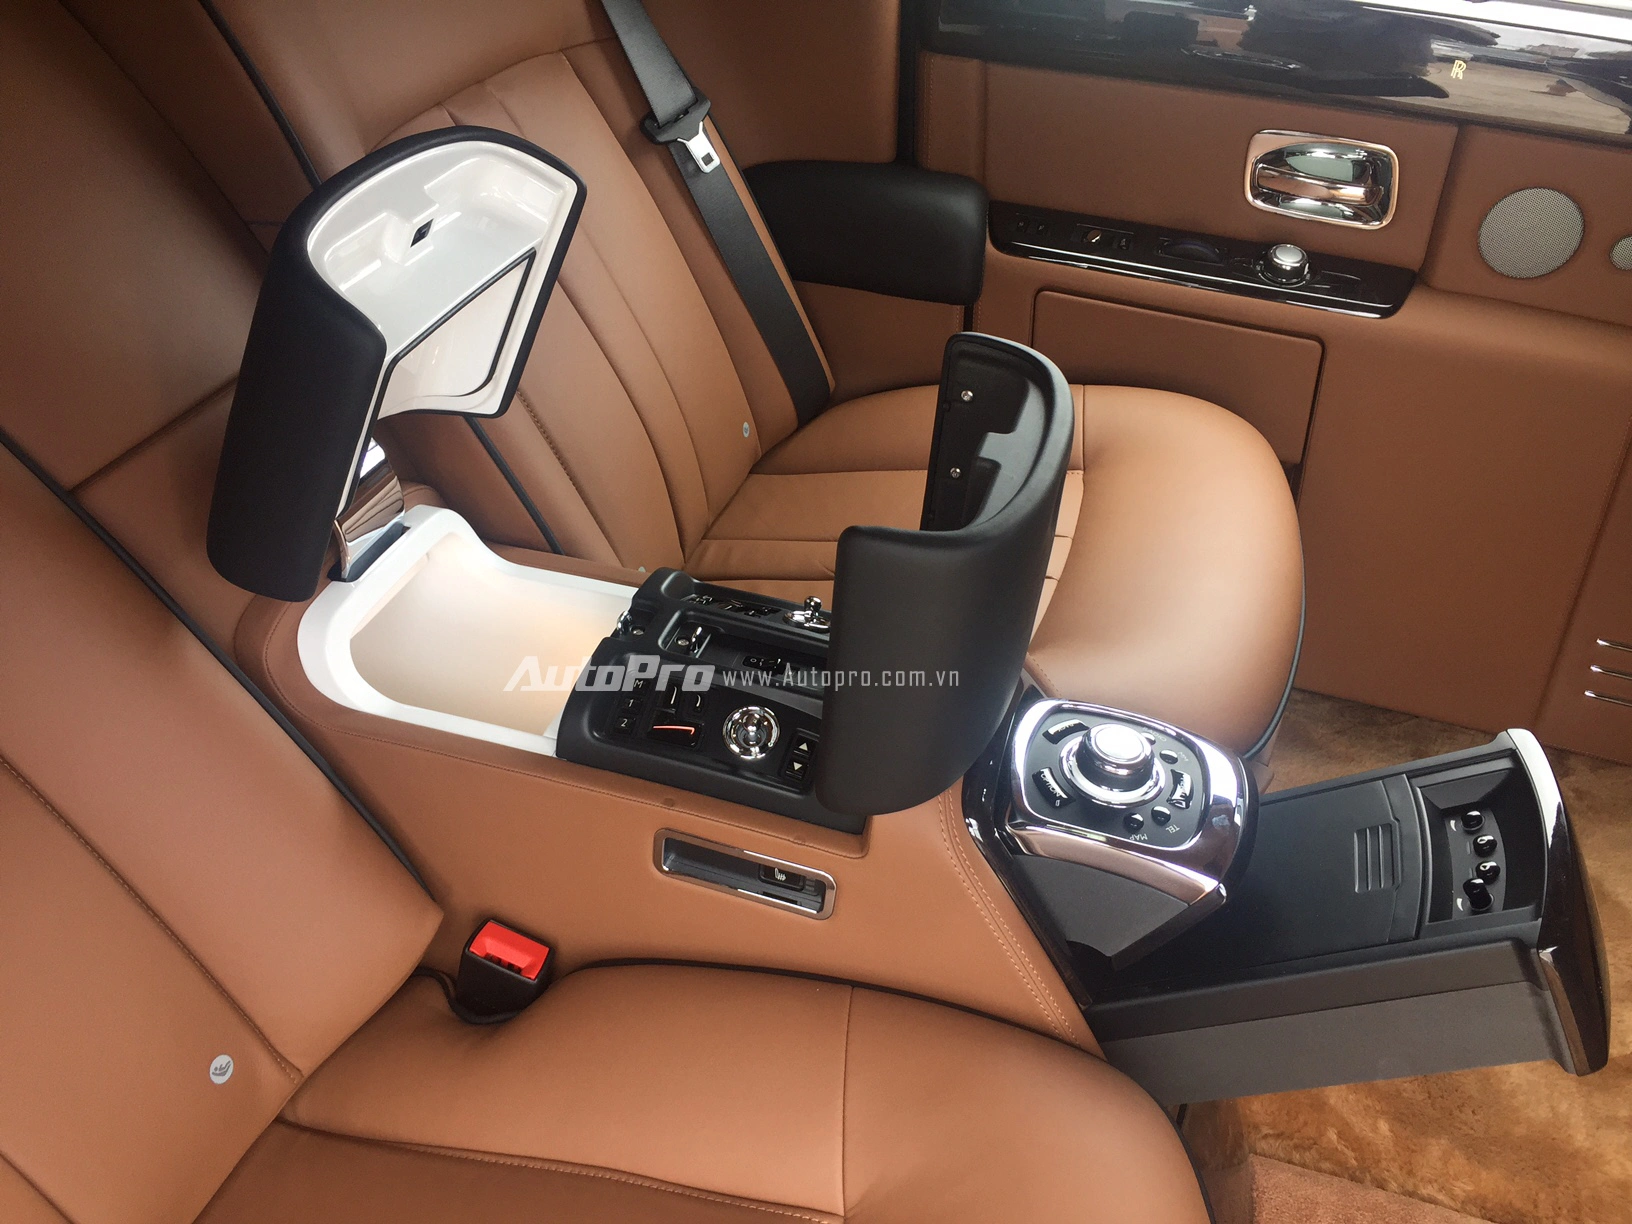 
Các nút bấm điều khiển dành cho chủ nhân của chiếc xe cũng được bố trí ẩn dưới bệ tì tay của hàng ghế sau.
